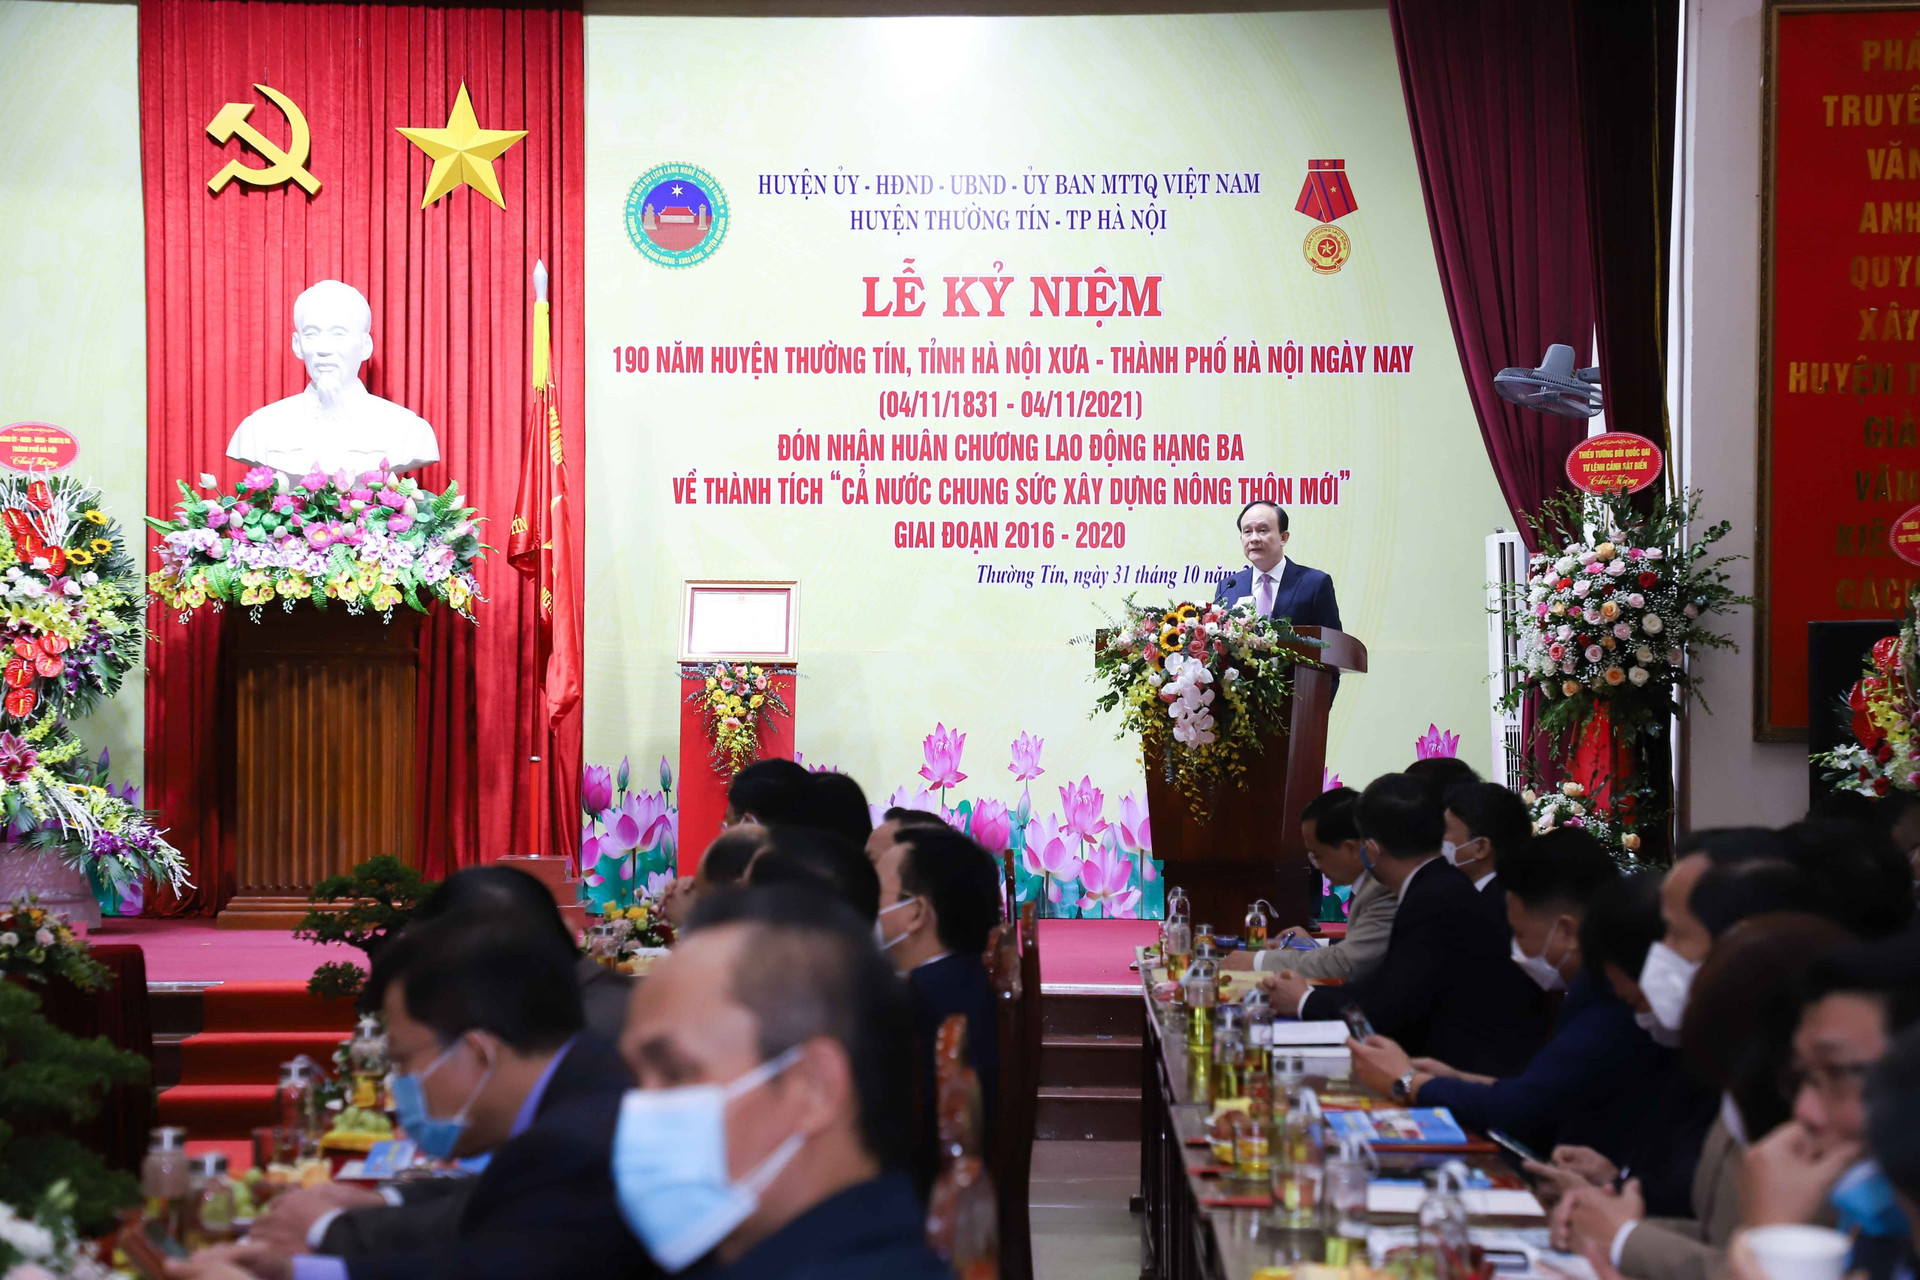 Đồng chí Nguyễn Ngọc Tuấn – Phó Bí thư Thành ủy, Chủ tịch HĐND Thành phố Hà Nội phát biểu chỉ đạo.